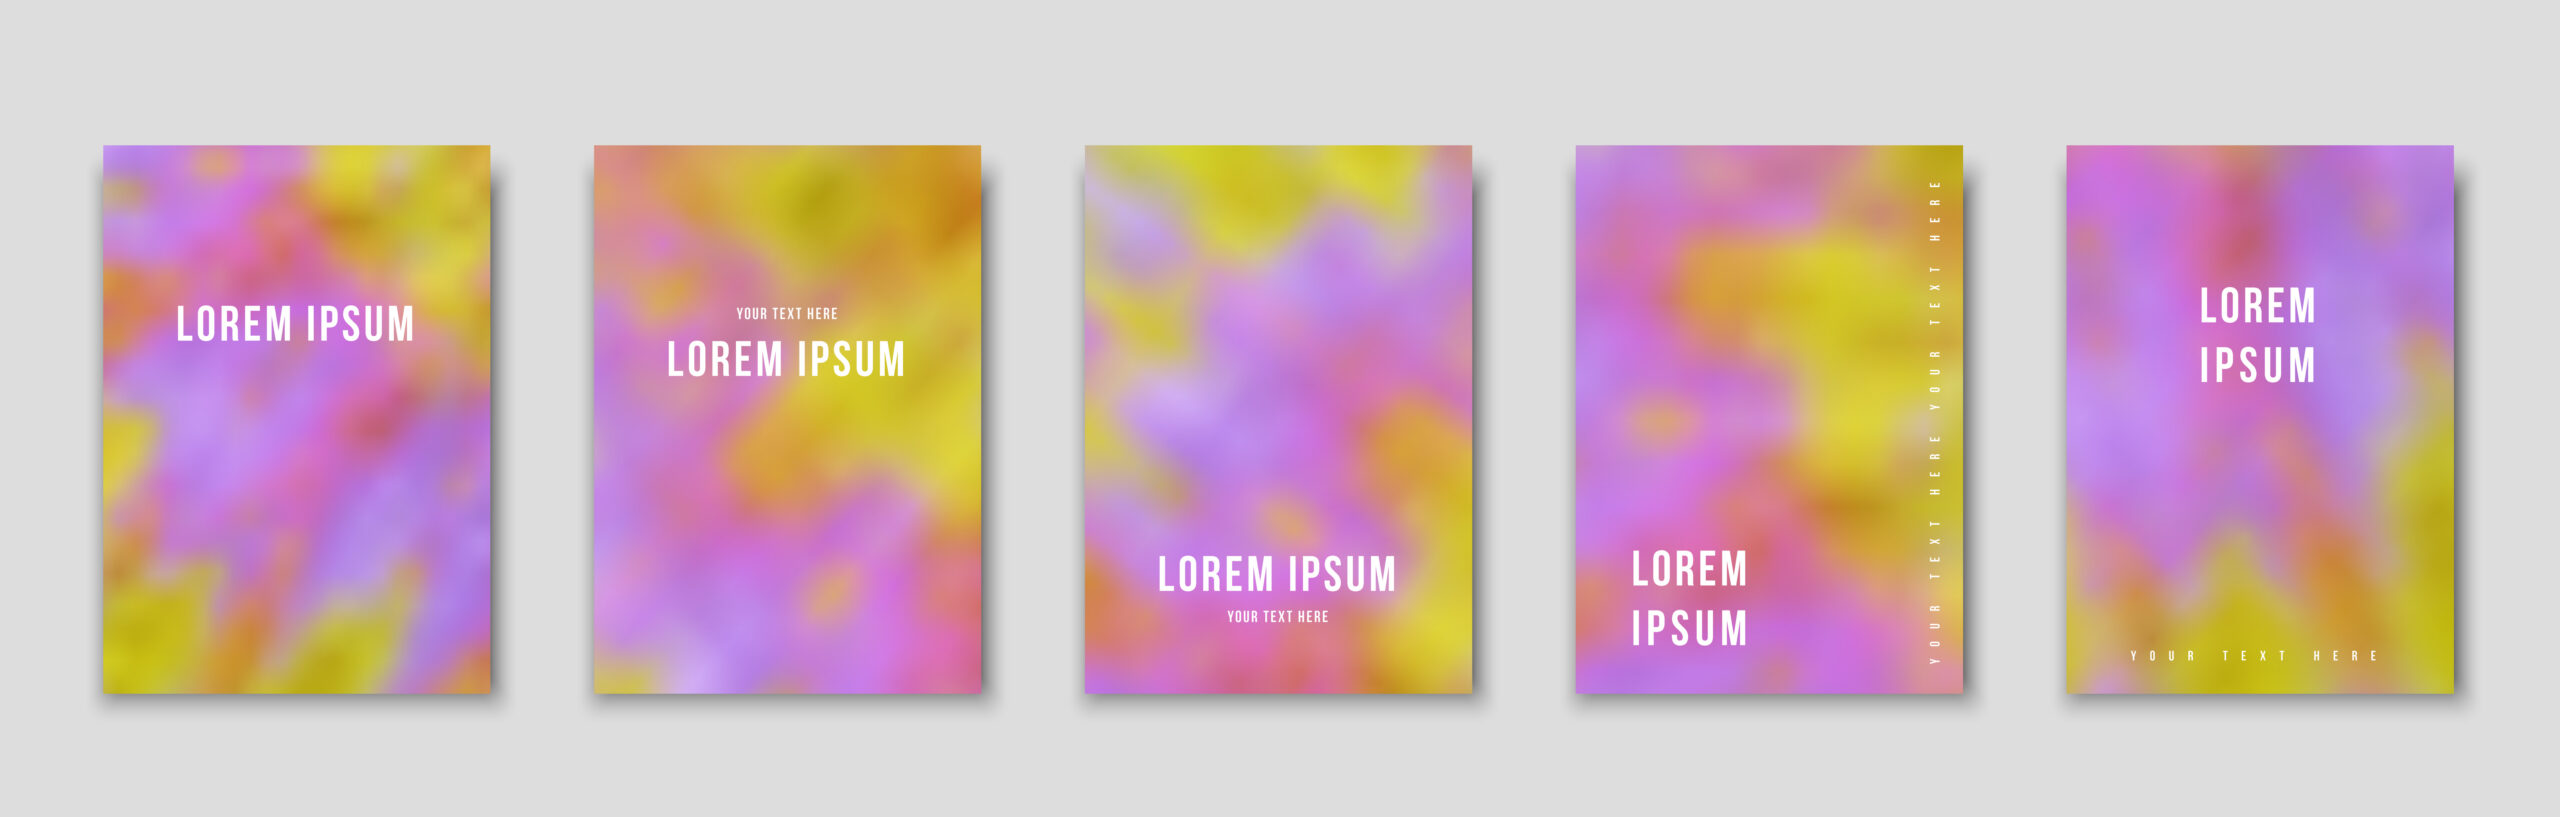 LOREM　IPUSUMと書かれた文字の配置外が違うピンクやオレンジやパープルのパターンが５つ並んでいる